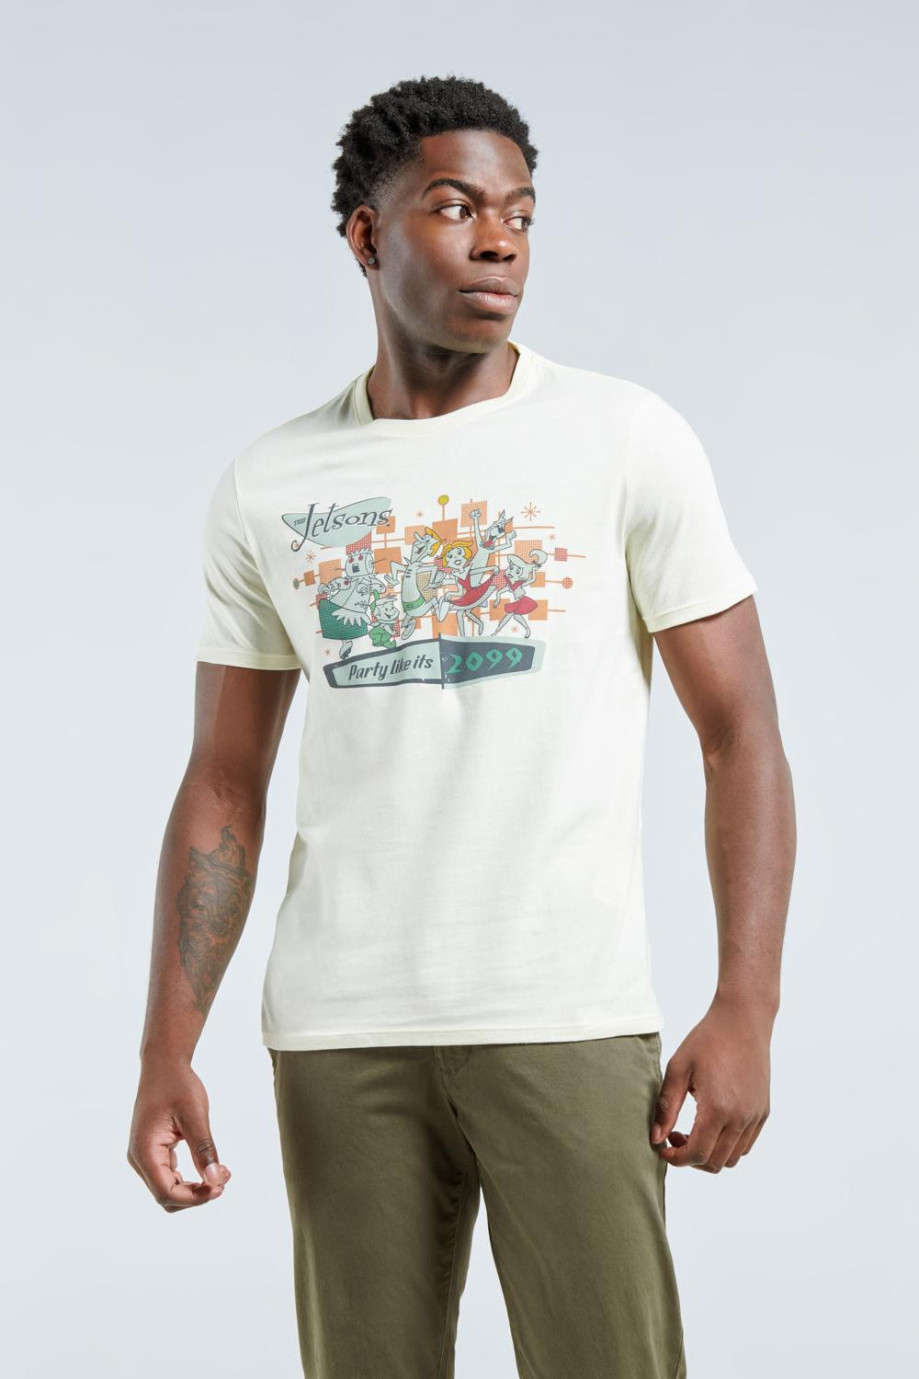 Camiseta crema con manga corta y diseño de Los Supersónicos